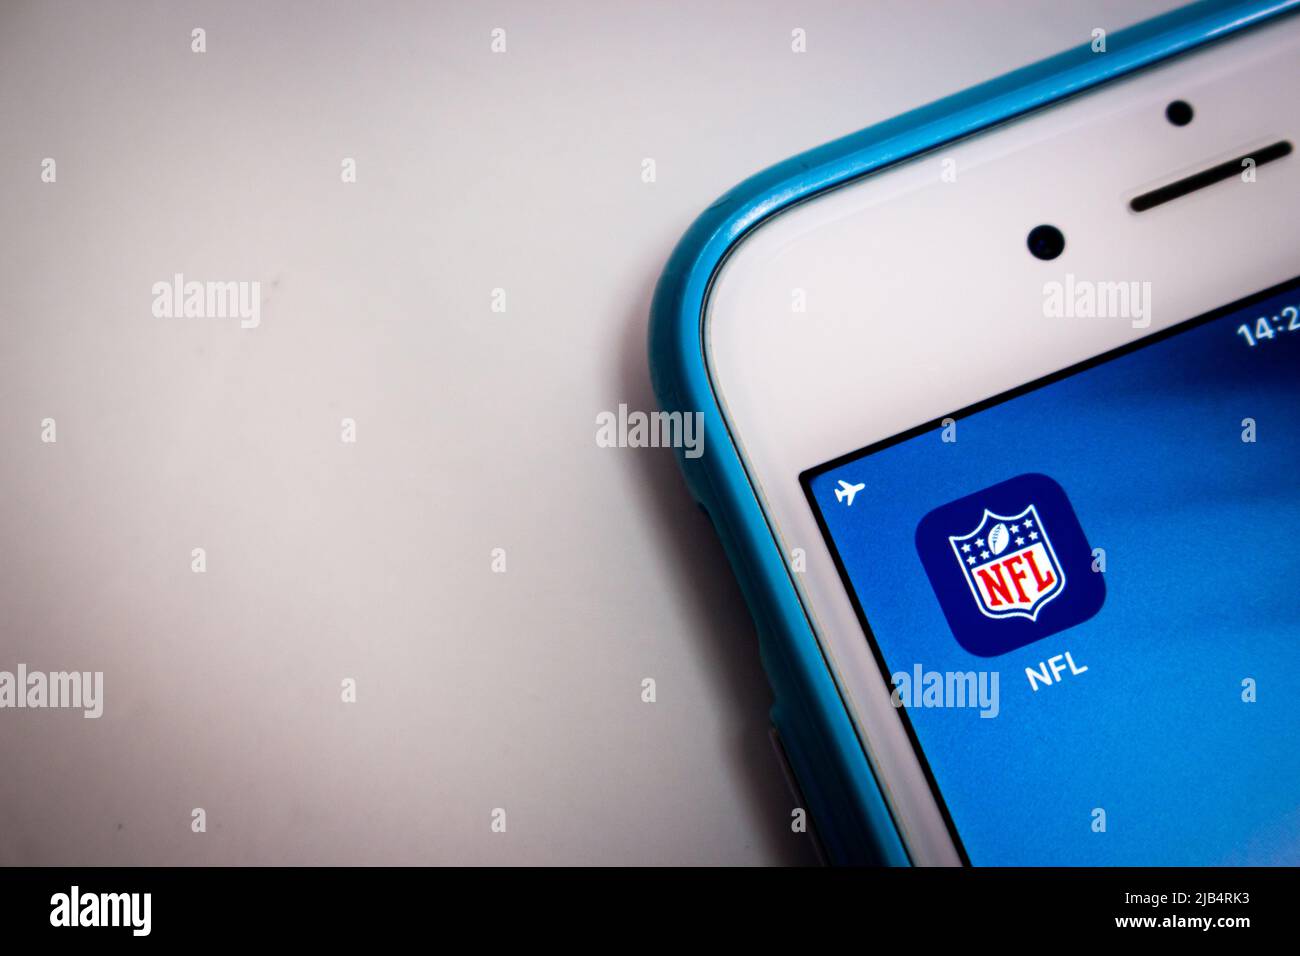 NFL (National Football League), una lega di calcio pro-americana, su iOS. La NFL è una delle 4 maggiori leghe sportive professionistiche del Nord America Foto Stock